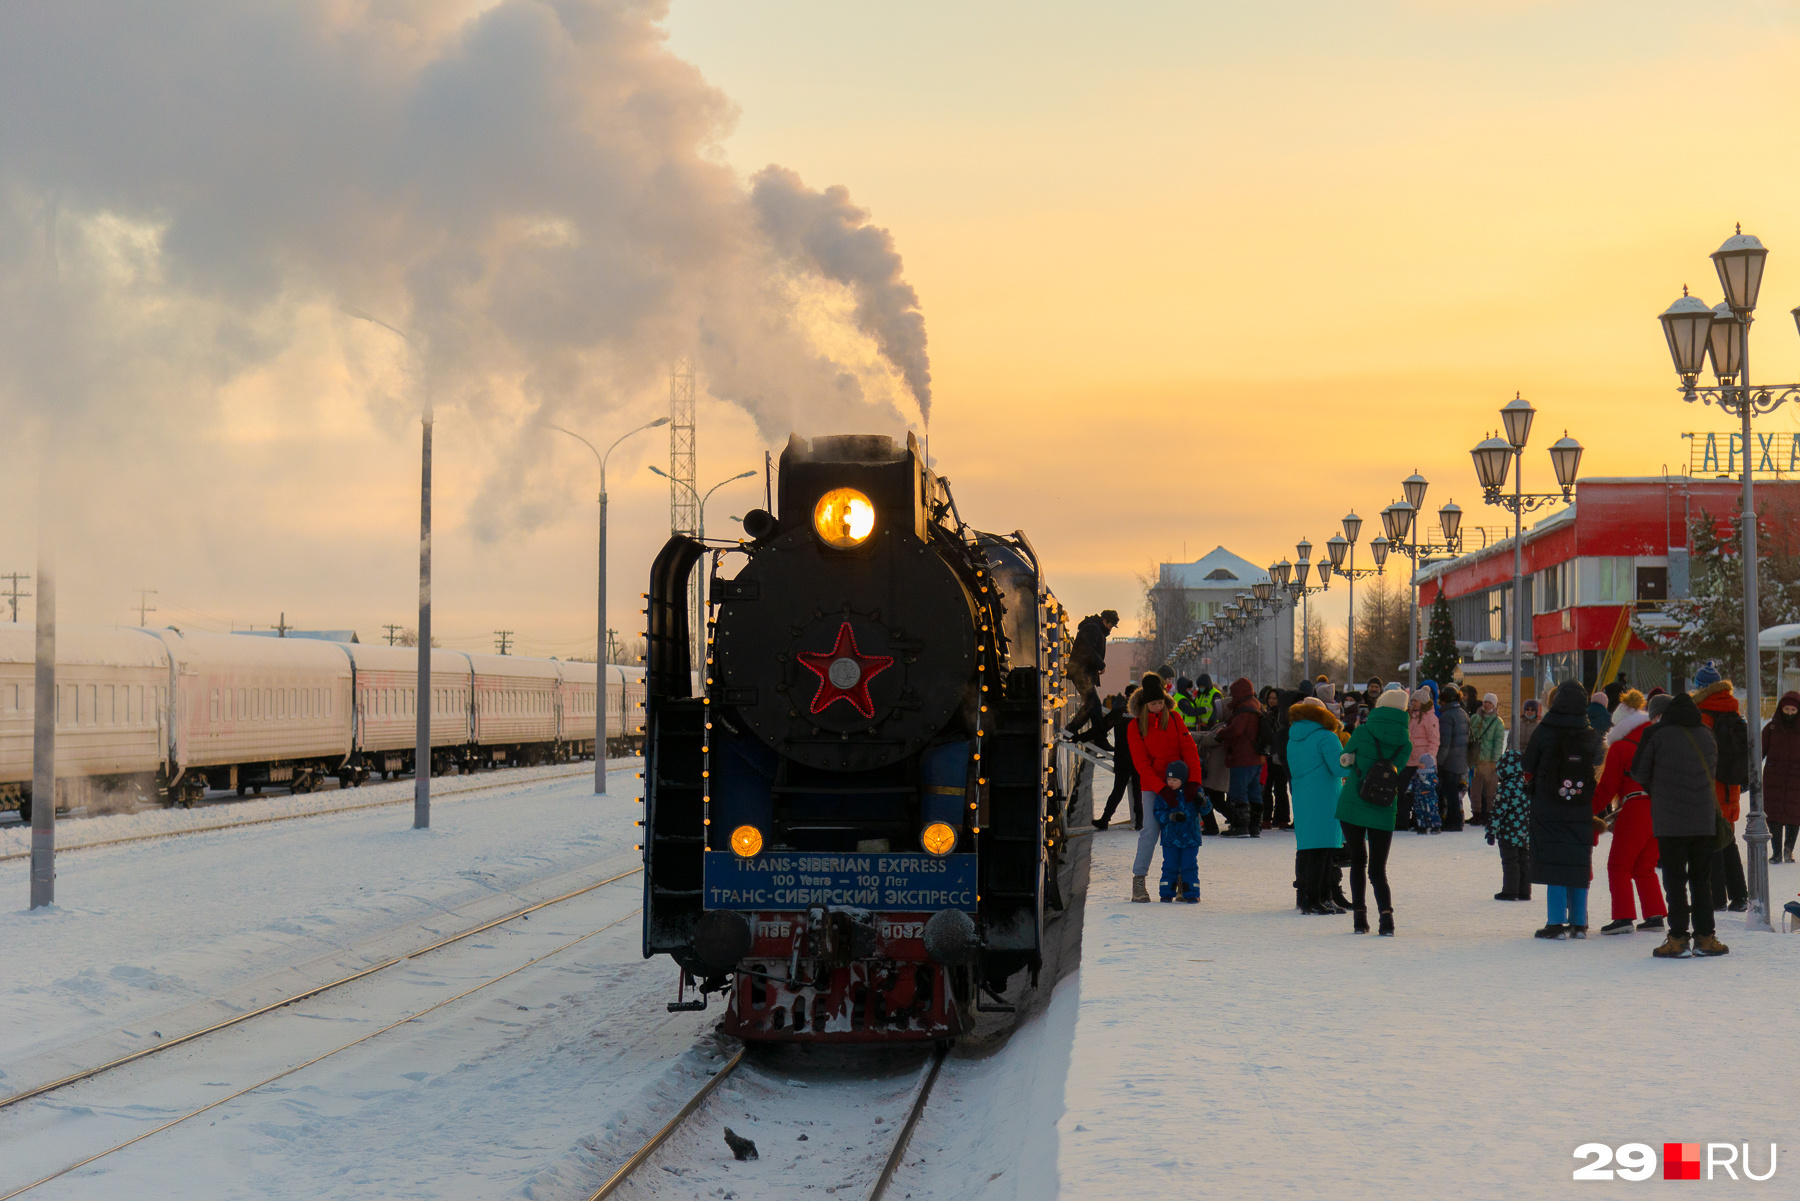 Рассмотрим поезд Деда Мороза со всех сторон. Как он выглядит внутри, <a href="https://29.ru/text/entertainment/2022/01/11/70368926/?utm_source=vk&utm_medium=social&utm_campaign=29" class="_" target="_blank">показали тут</a>